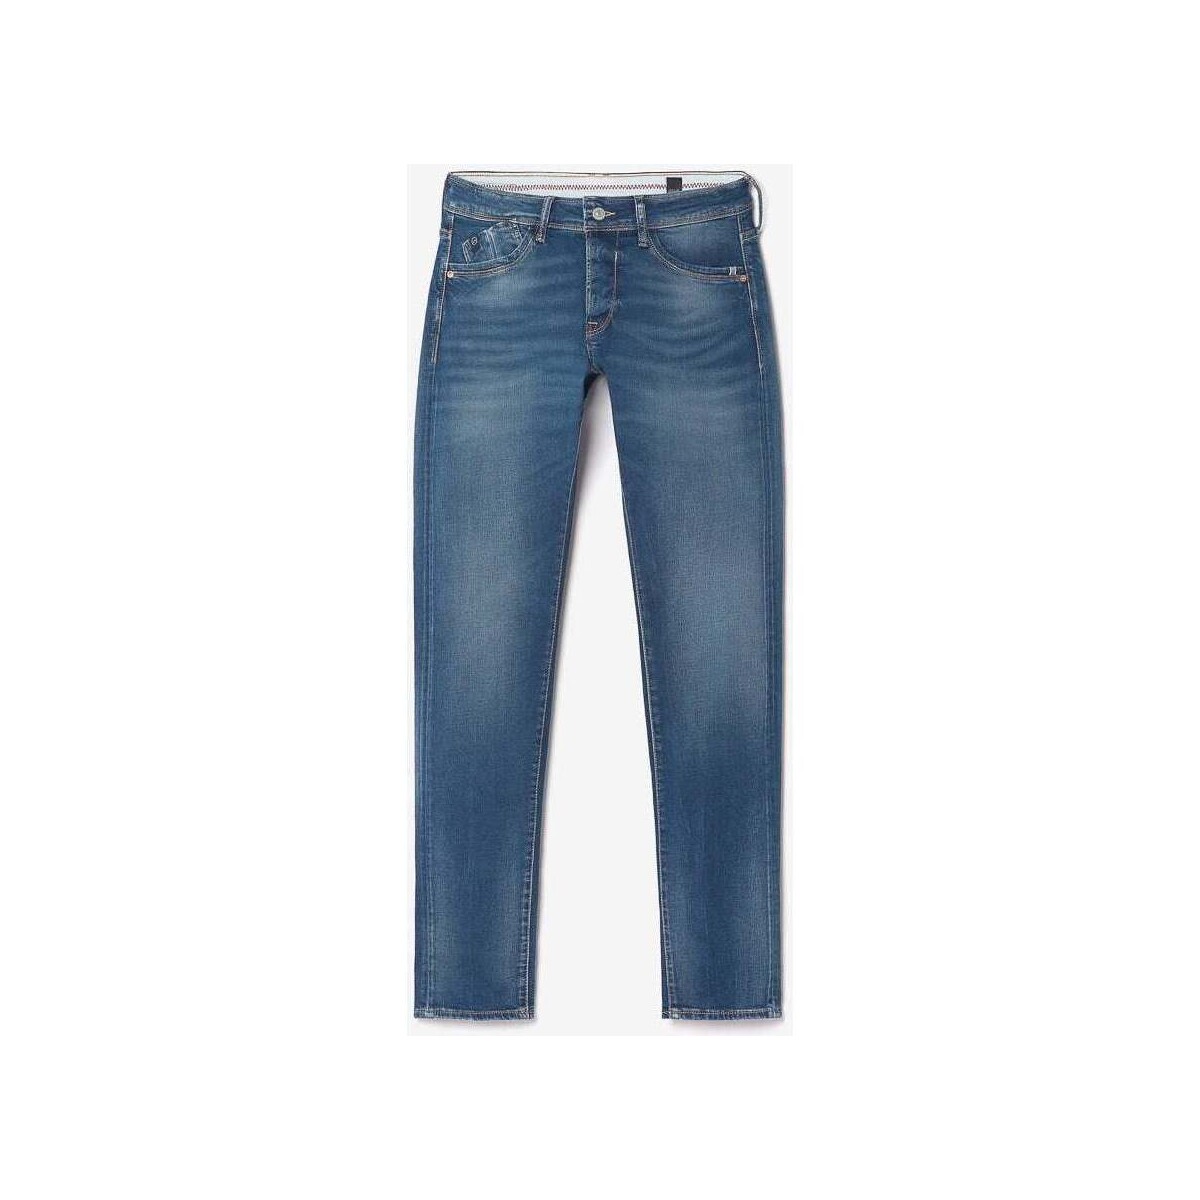 Vêtements Homme Jeans Le Temps des Cerises Lazare 700/11 adjusted jeans bleu Bleu